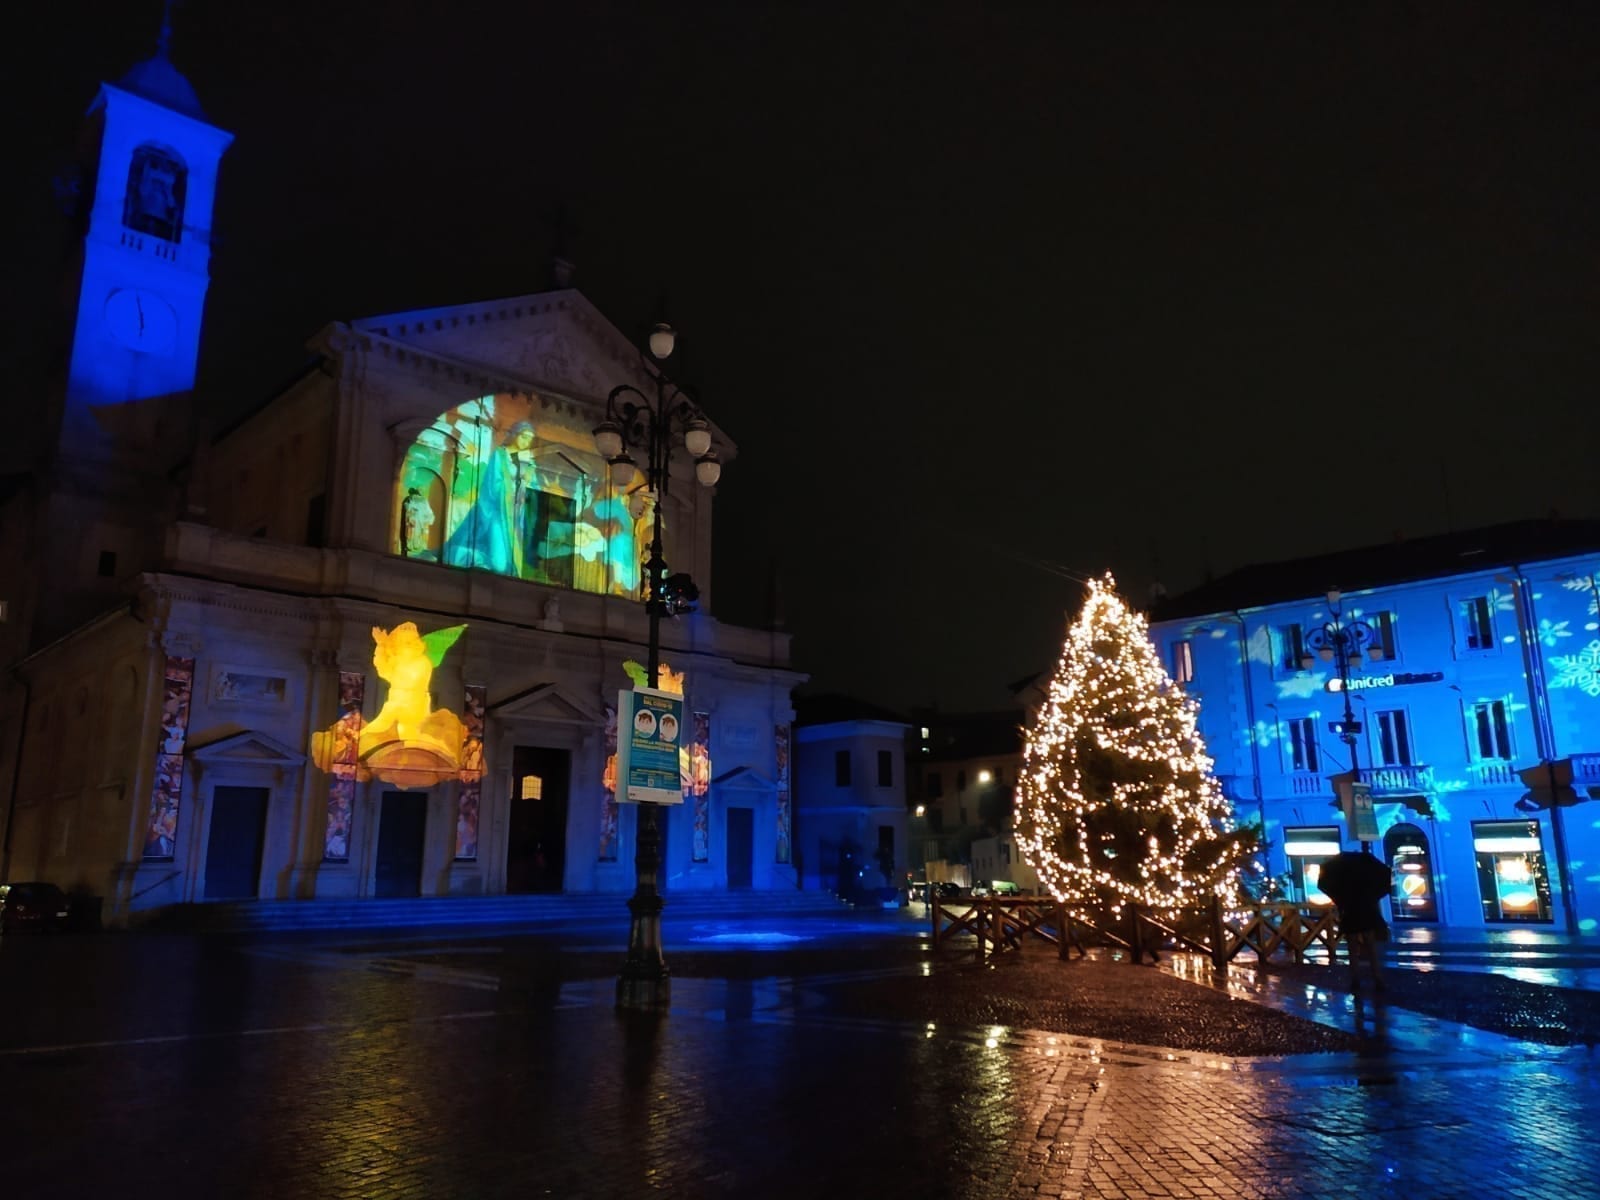 Natale, Saronno: sabato acceso albero e luminarie. Ecco il look del centro